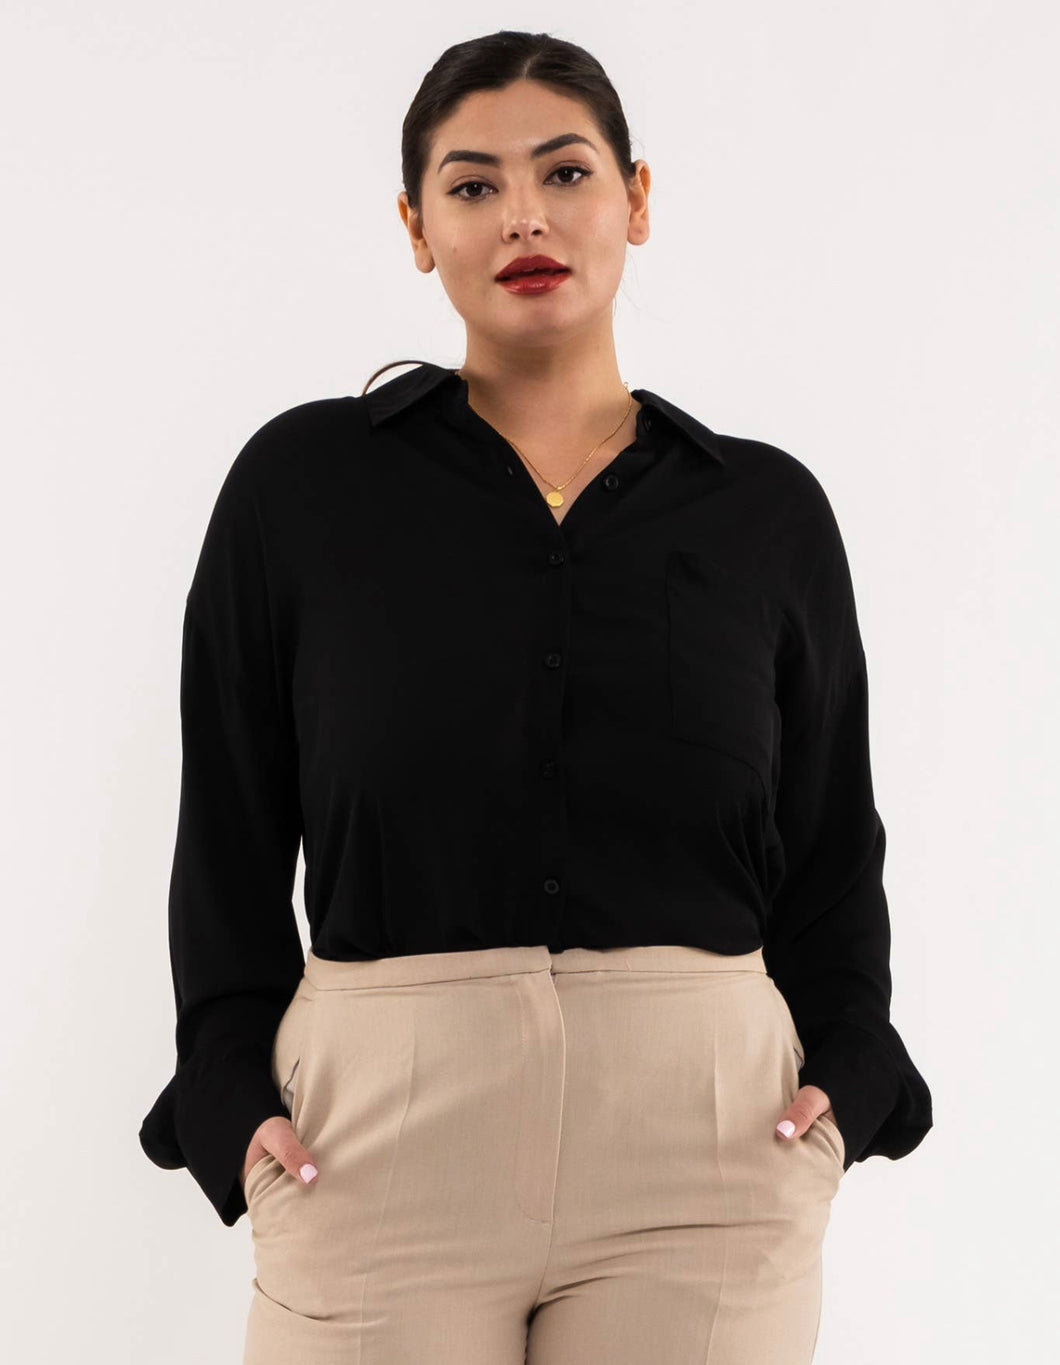 Black long sleeve blouse